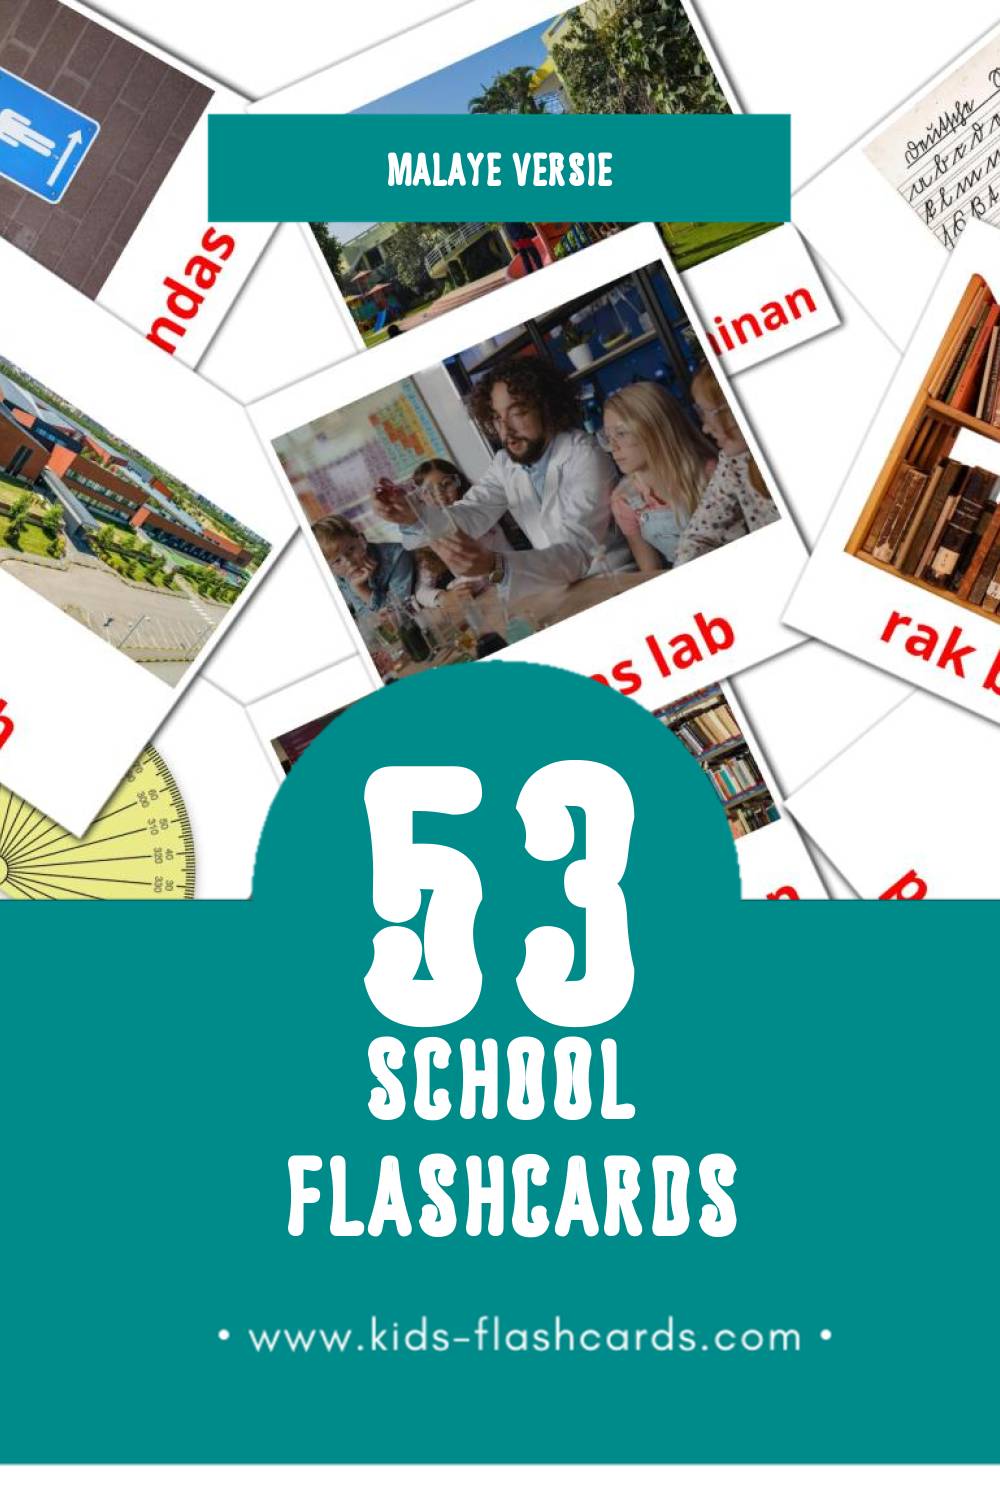 Visuele Sekolah Flashcards voor Kleuters (53 kaarten in het Malay)